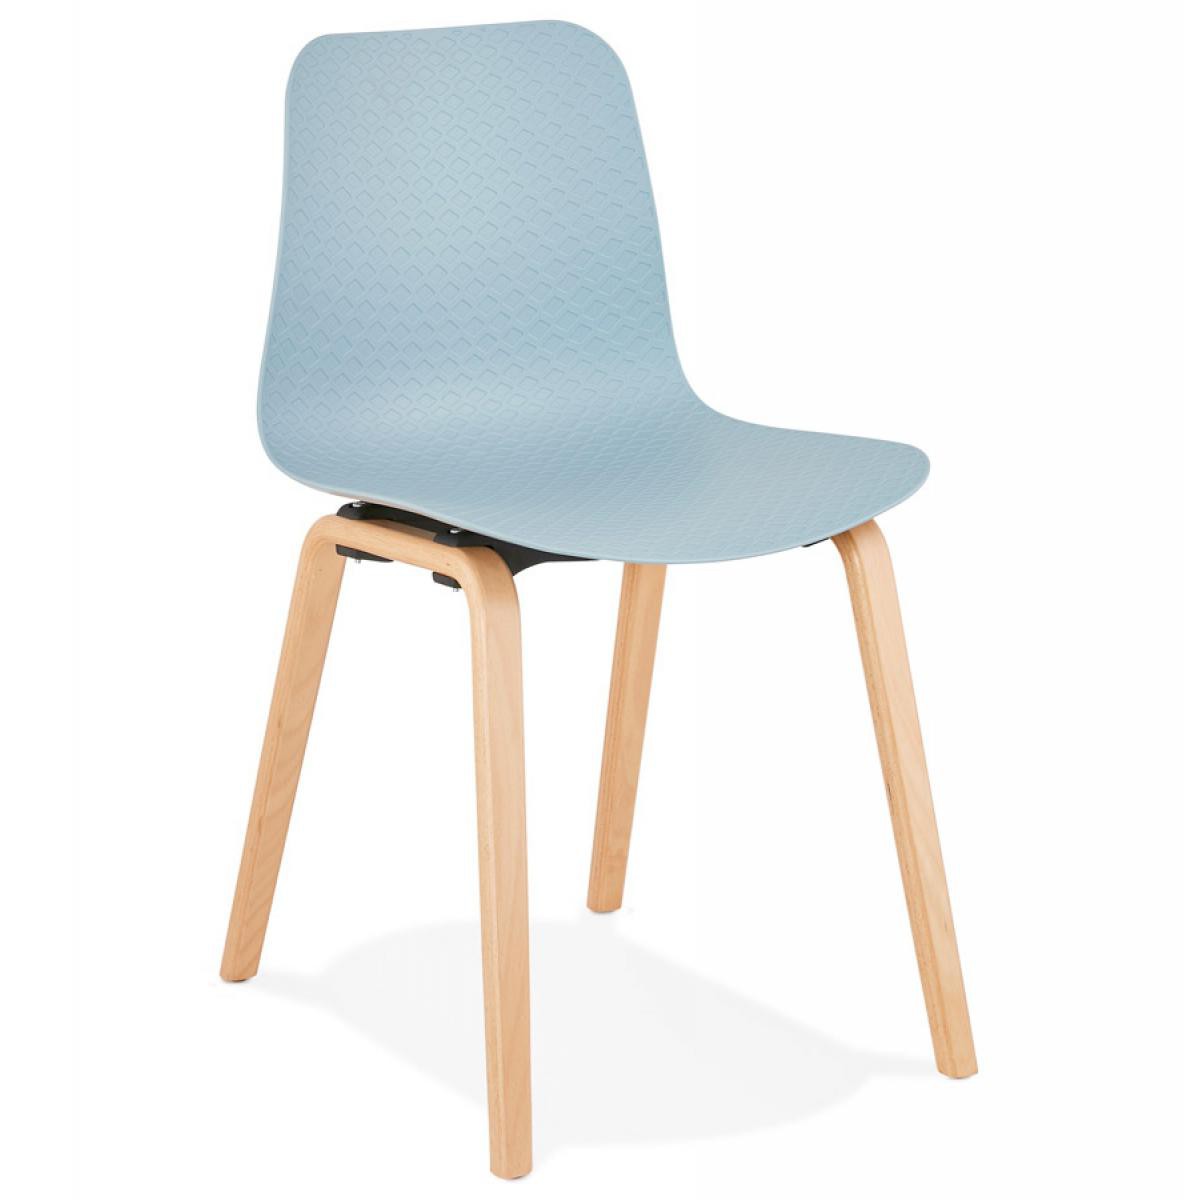 Alterego - Chaise scandinave 'PACIFIK' bleue avec pieds en bois finition naturelle - Chaises